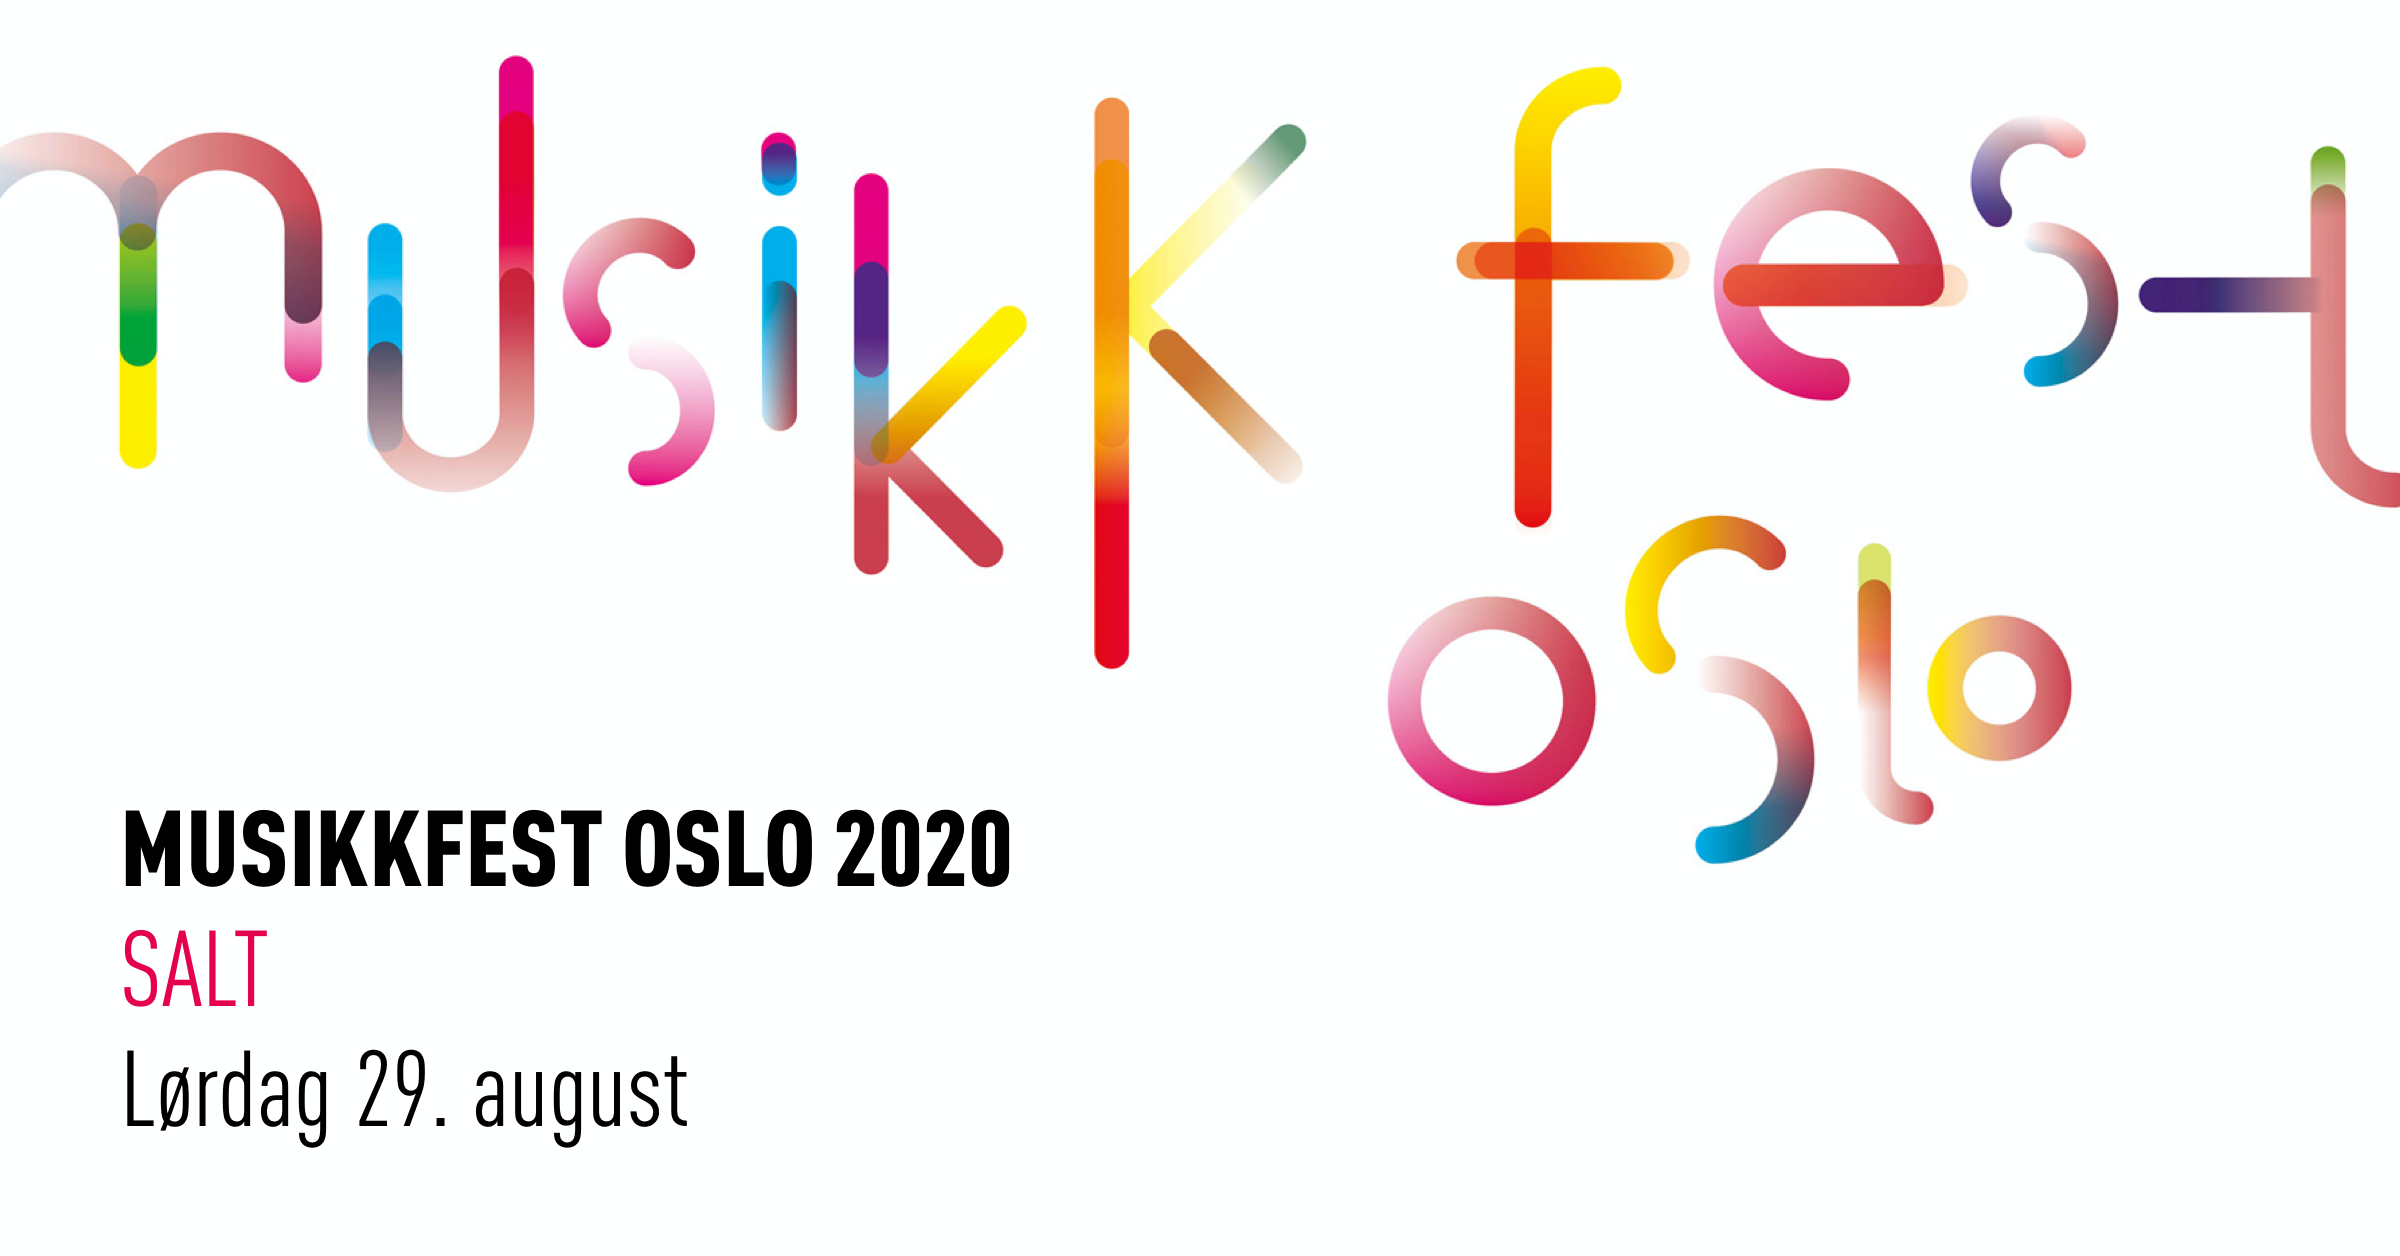 Musikkfest Oslo 2020